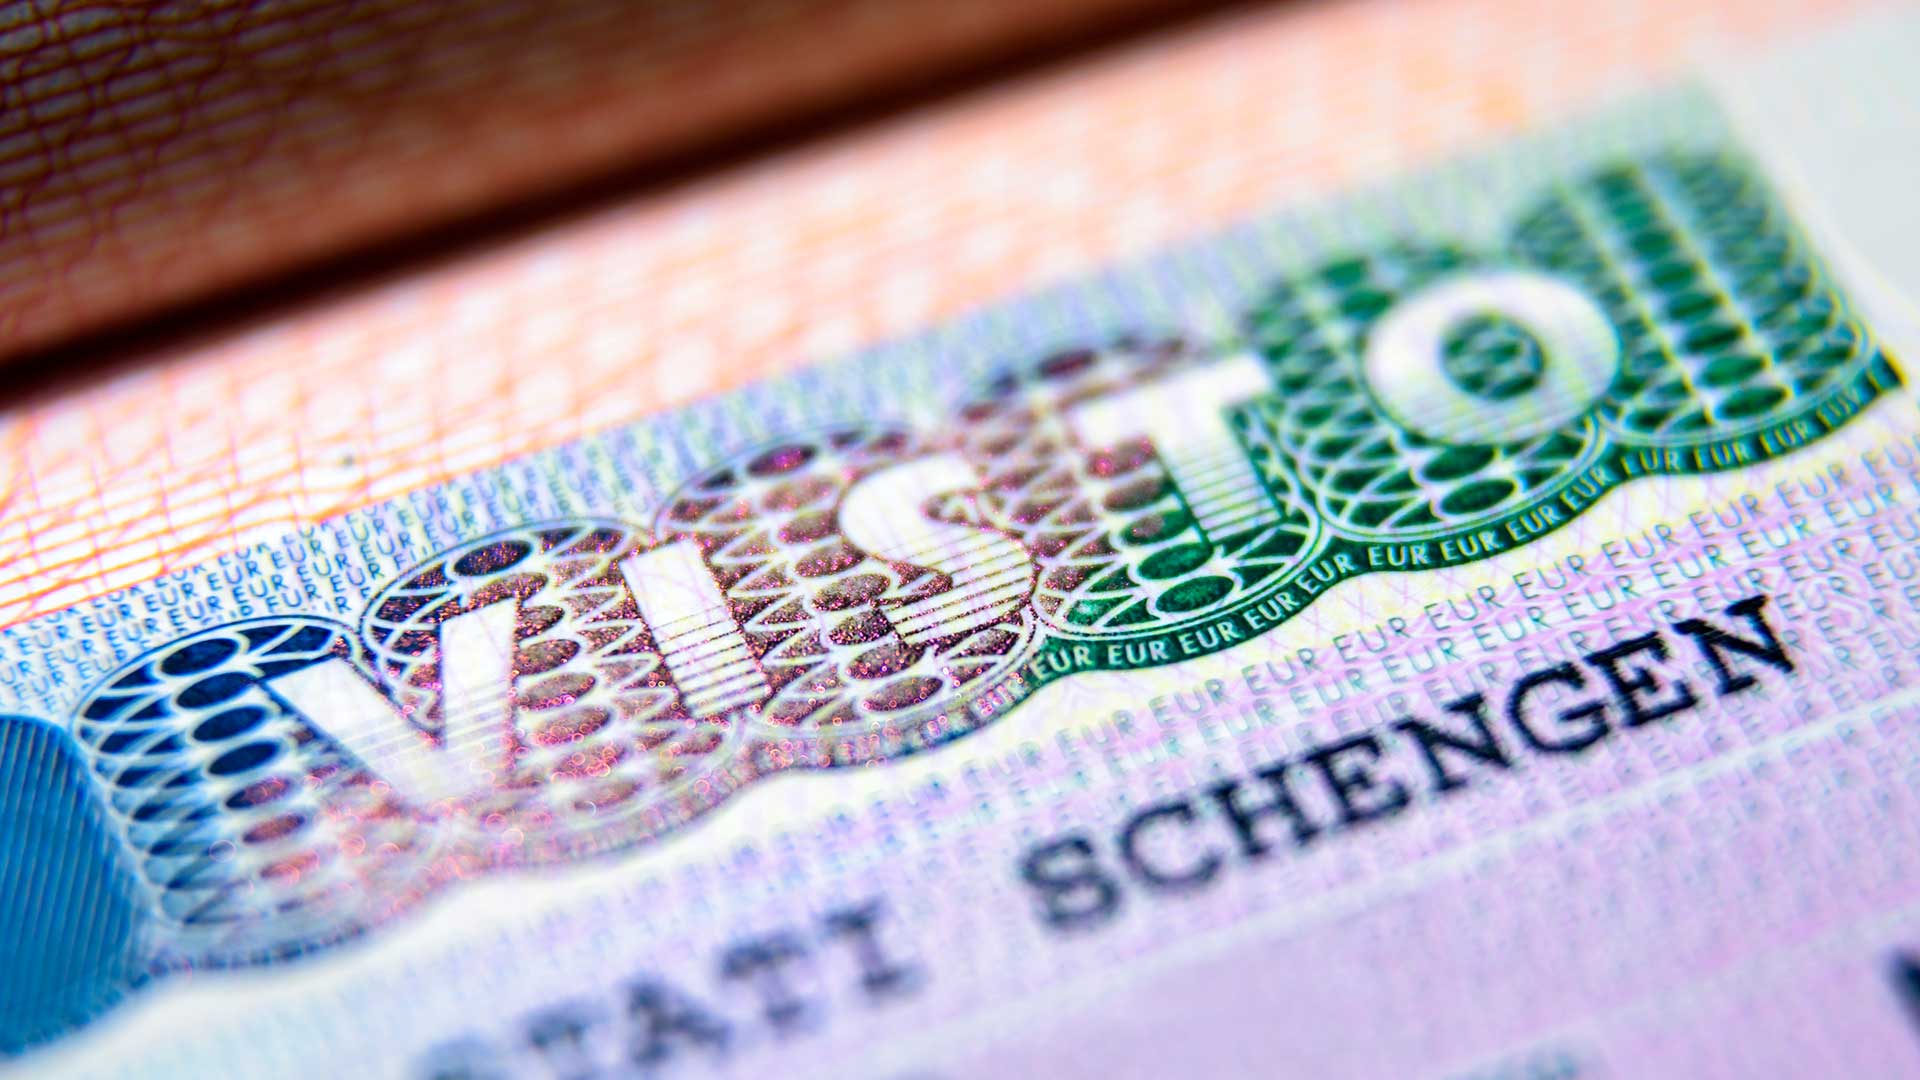 шенгенская виза в италию требования